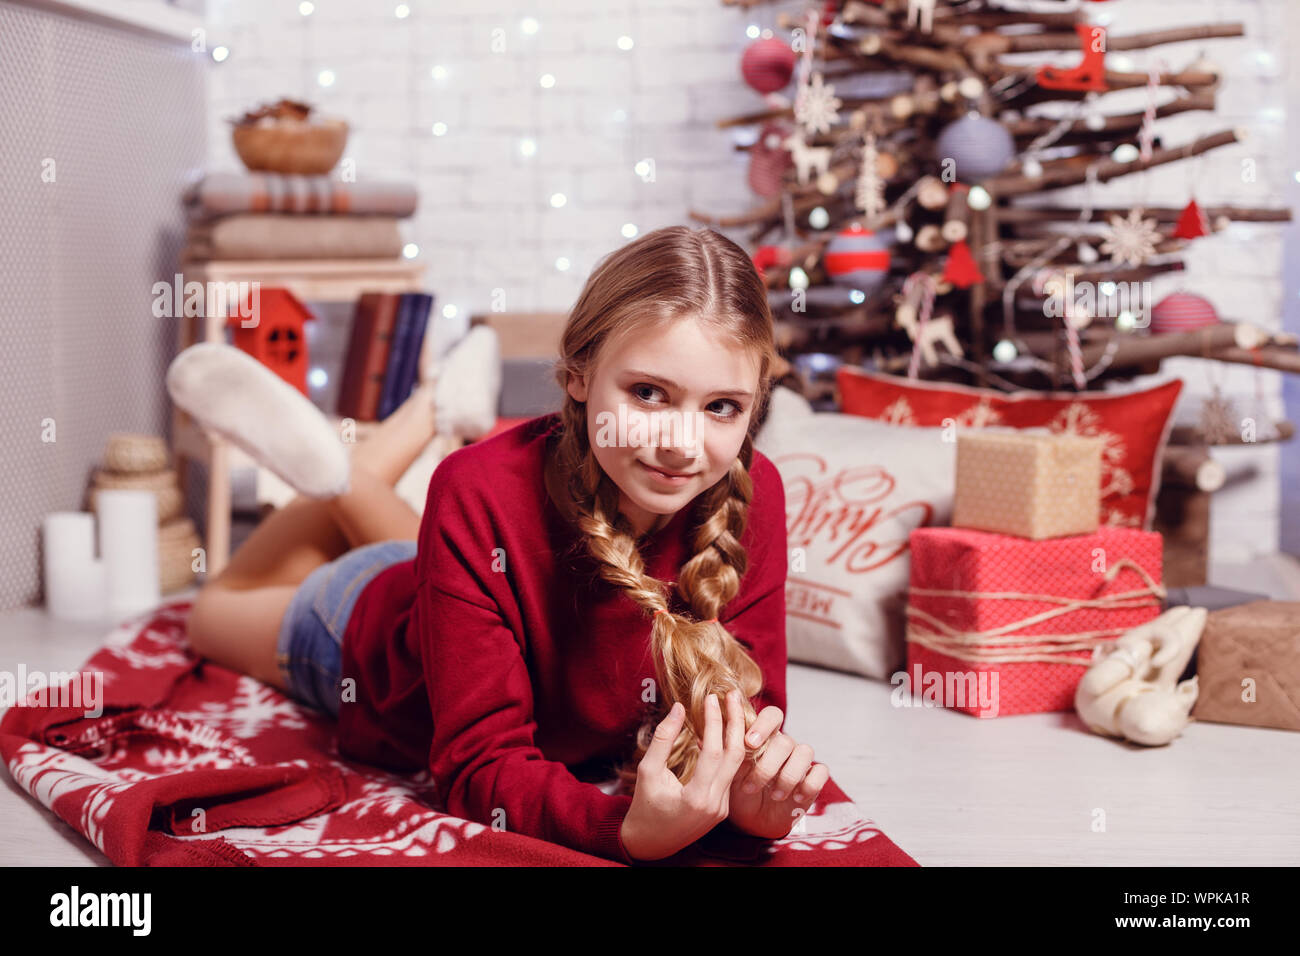 Mädchen Schwester Freunde umarmen sitzen am Weihnachtsbaum, das Konzept der Kindheit, Weihnachten und Neujahr, auf hellem Hintergrund Stockfoto